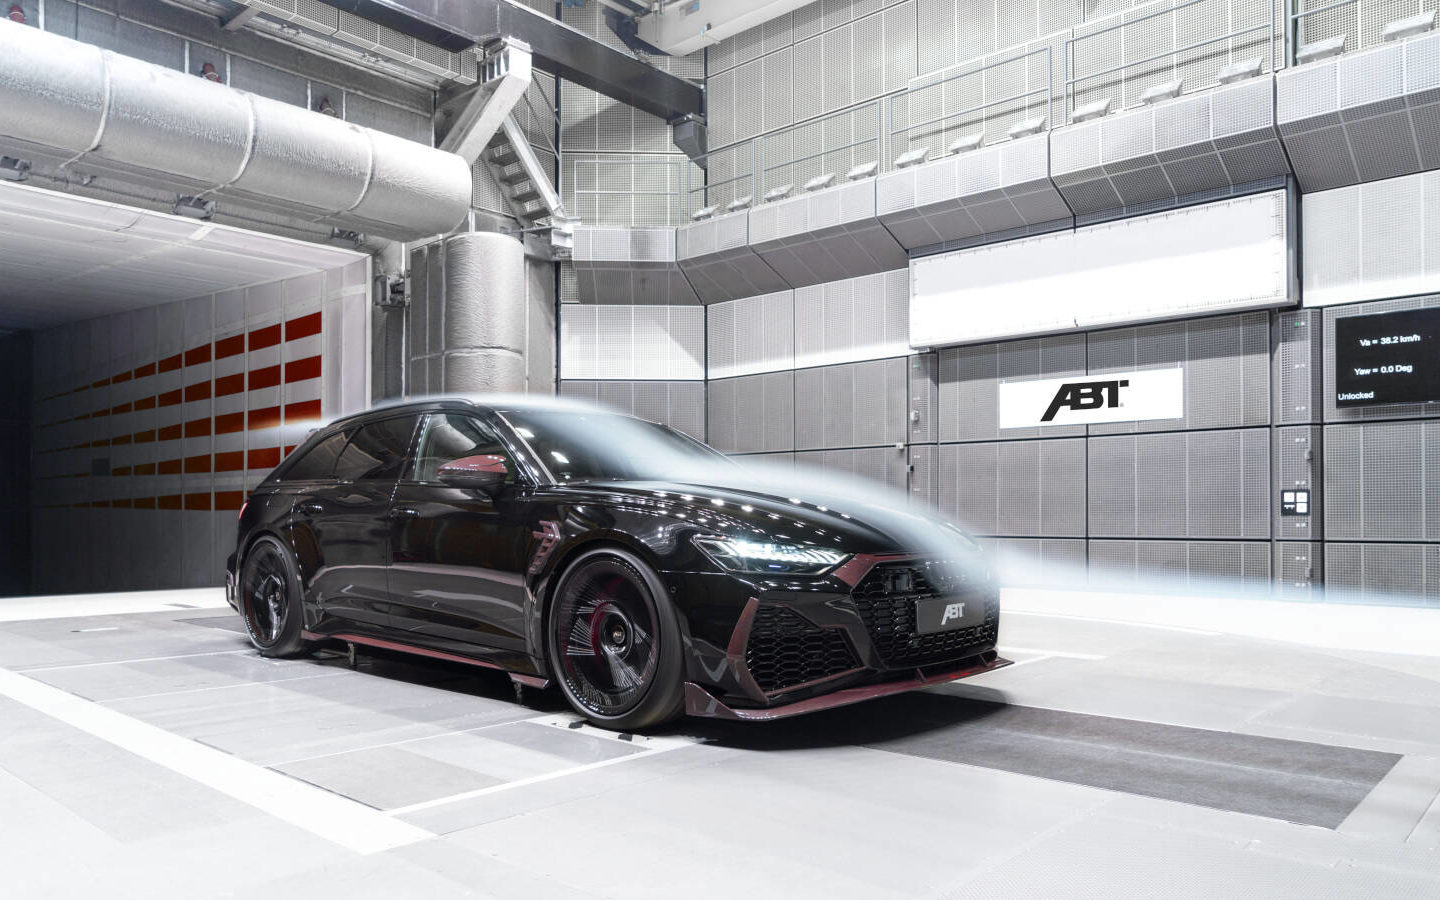 Audi RS 6 Avant Johann Abt Signature Edition